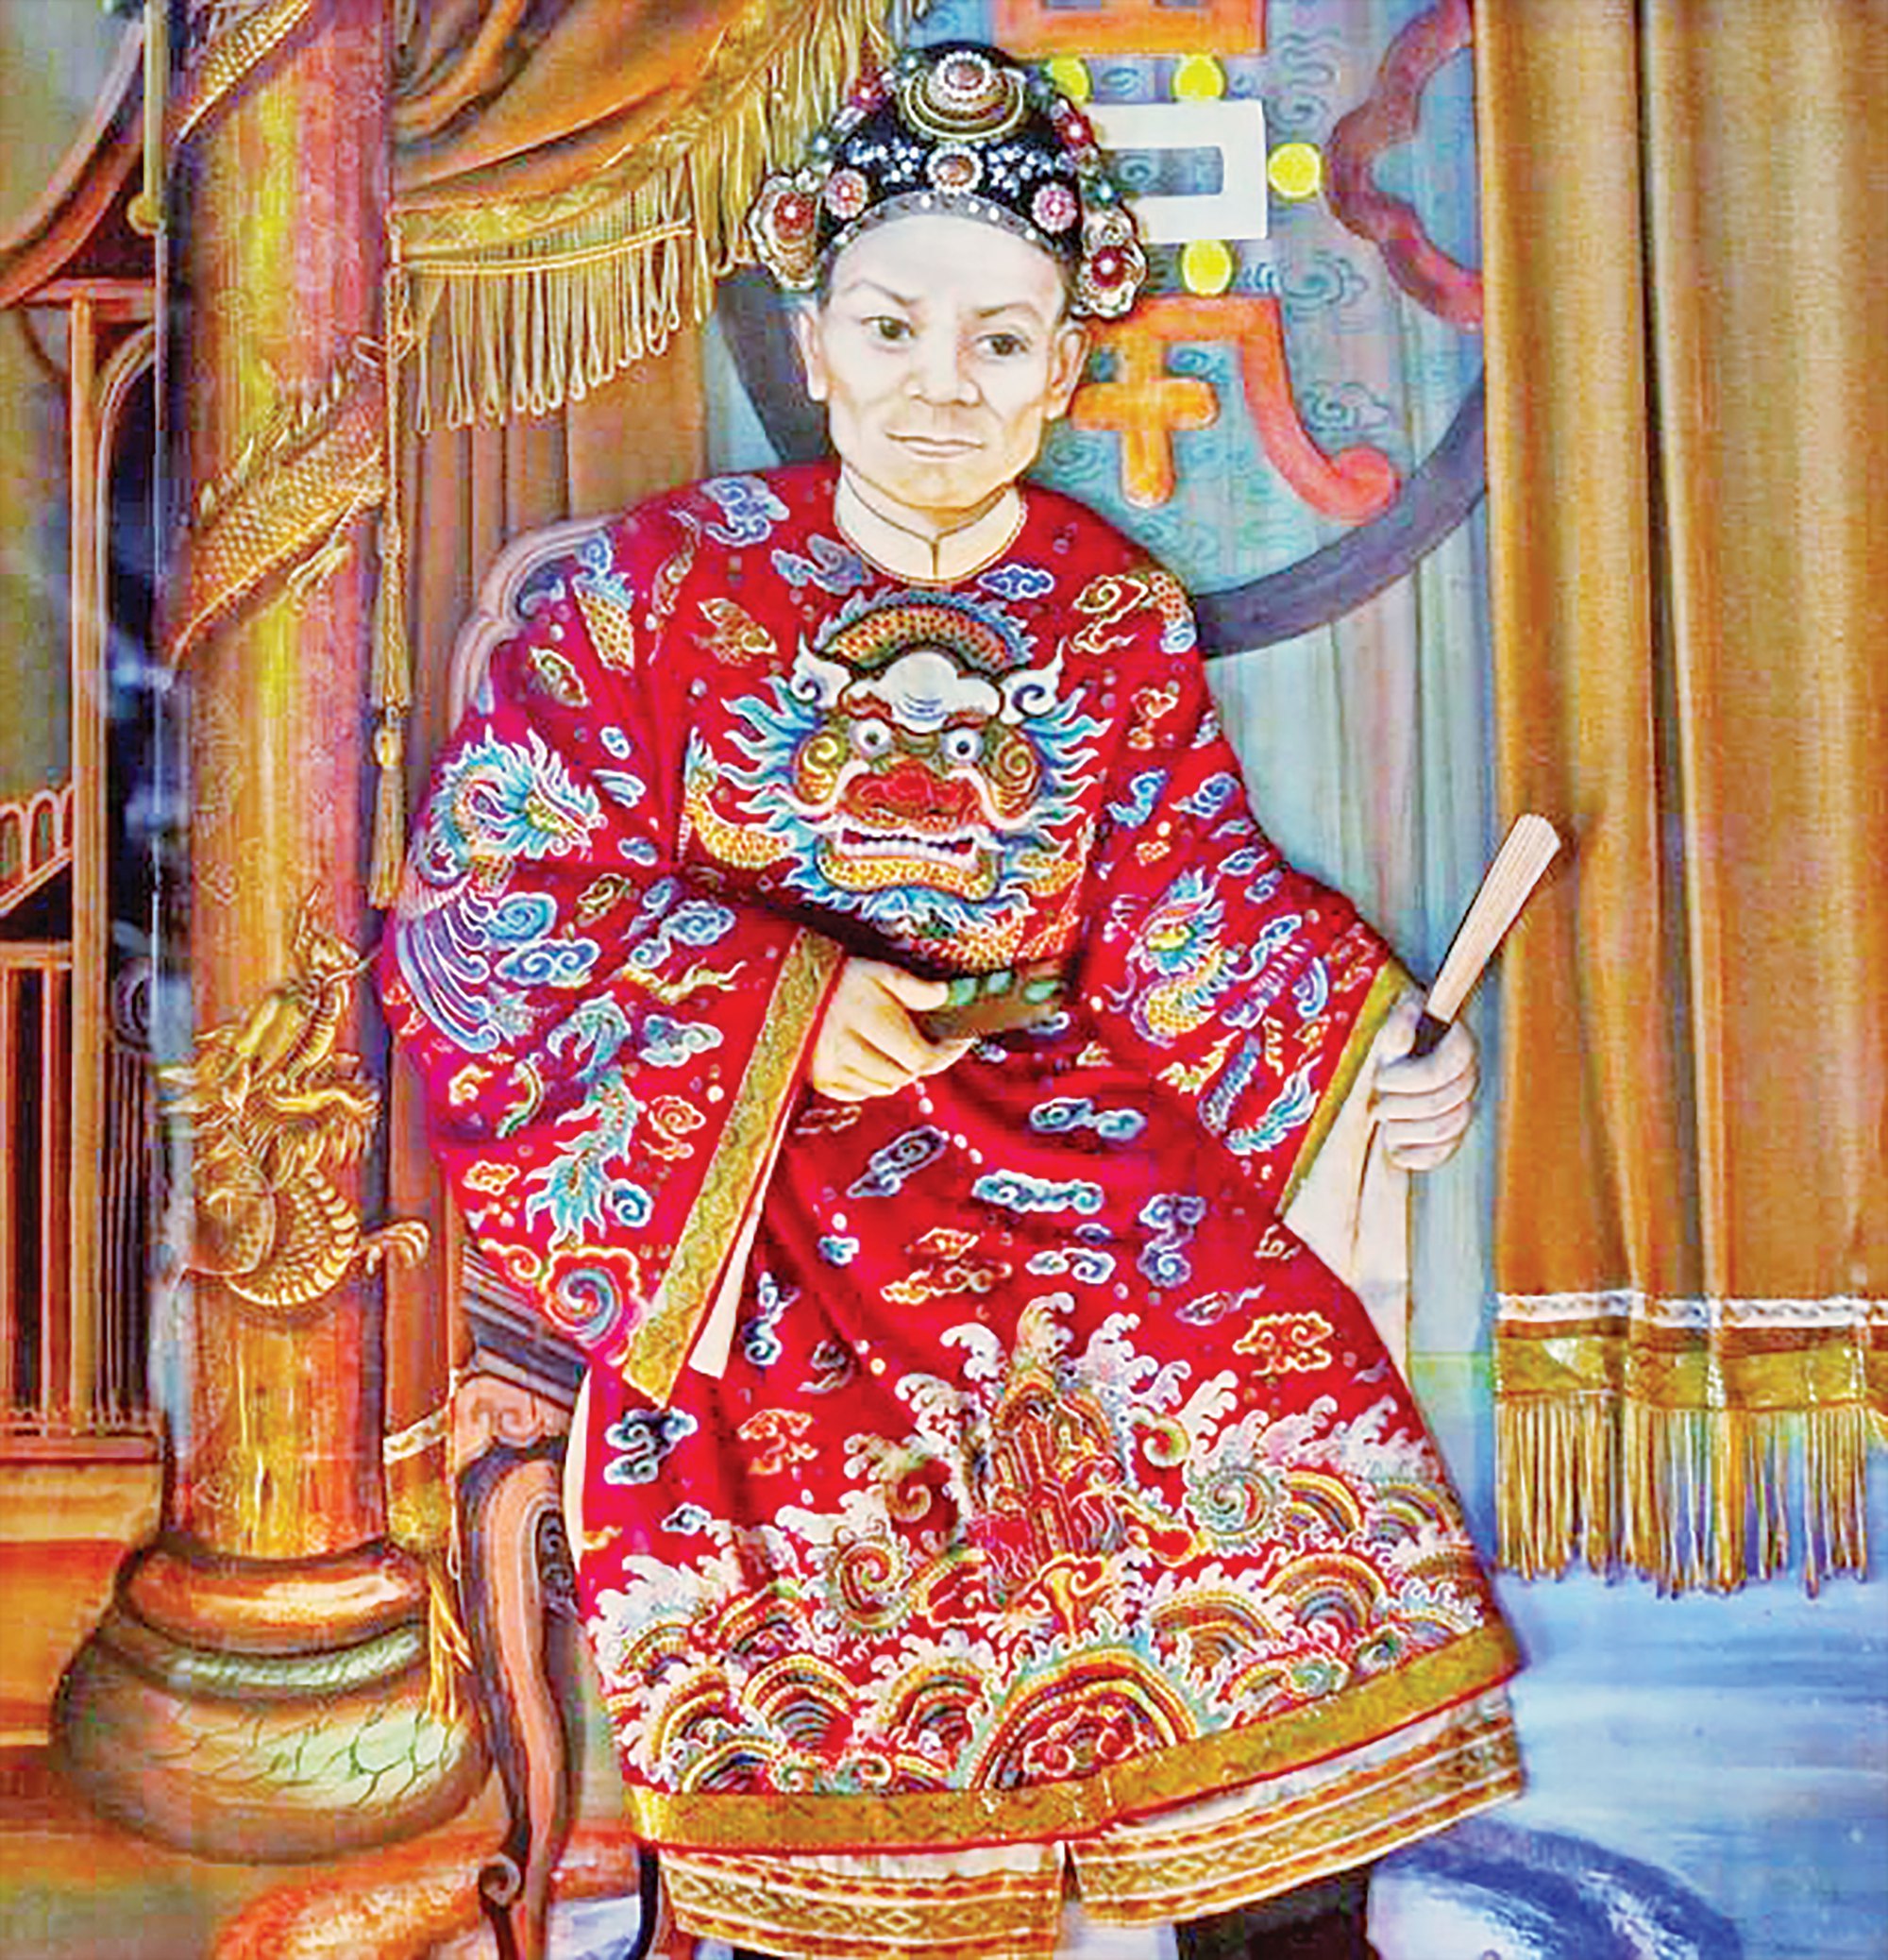 Tả quân Lê Văn Duyệt có công khai phá đất Nam bộ, 2 lần được vua nhà Nguyễn cử làm Tổng trấn Gia Định - Ảnh 1.